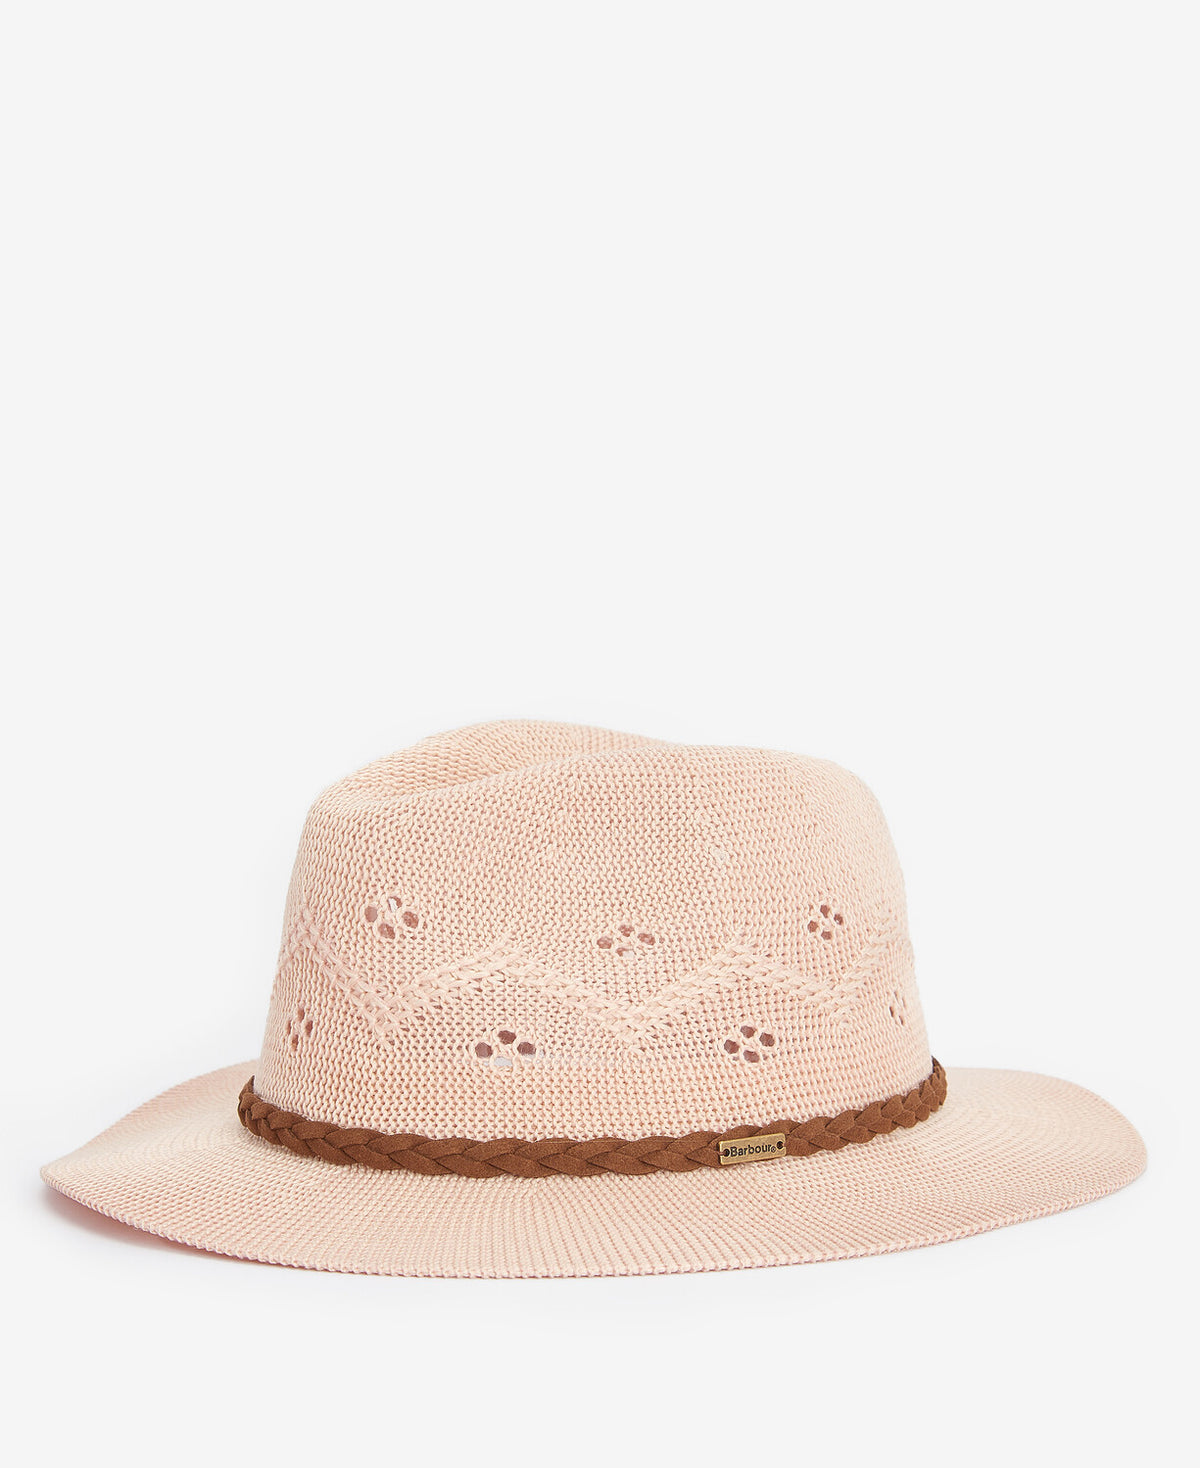 Barbour Ladies Flowerdale Trilby Summer Hat